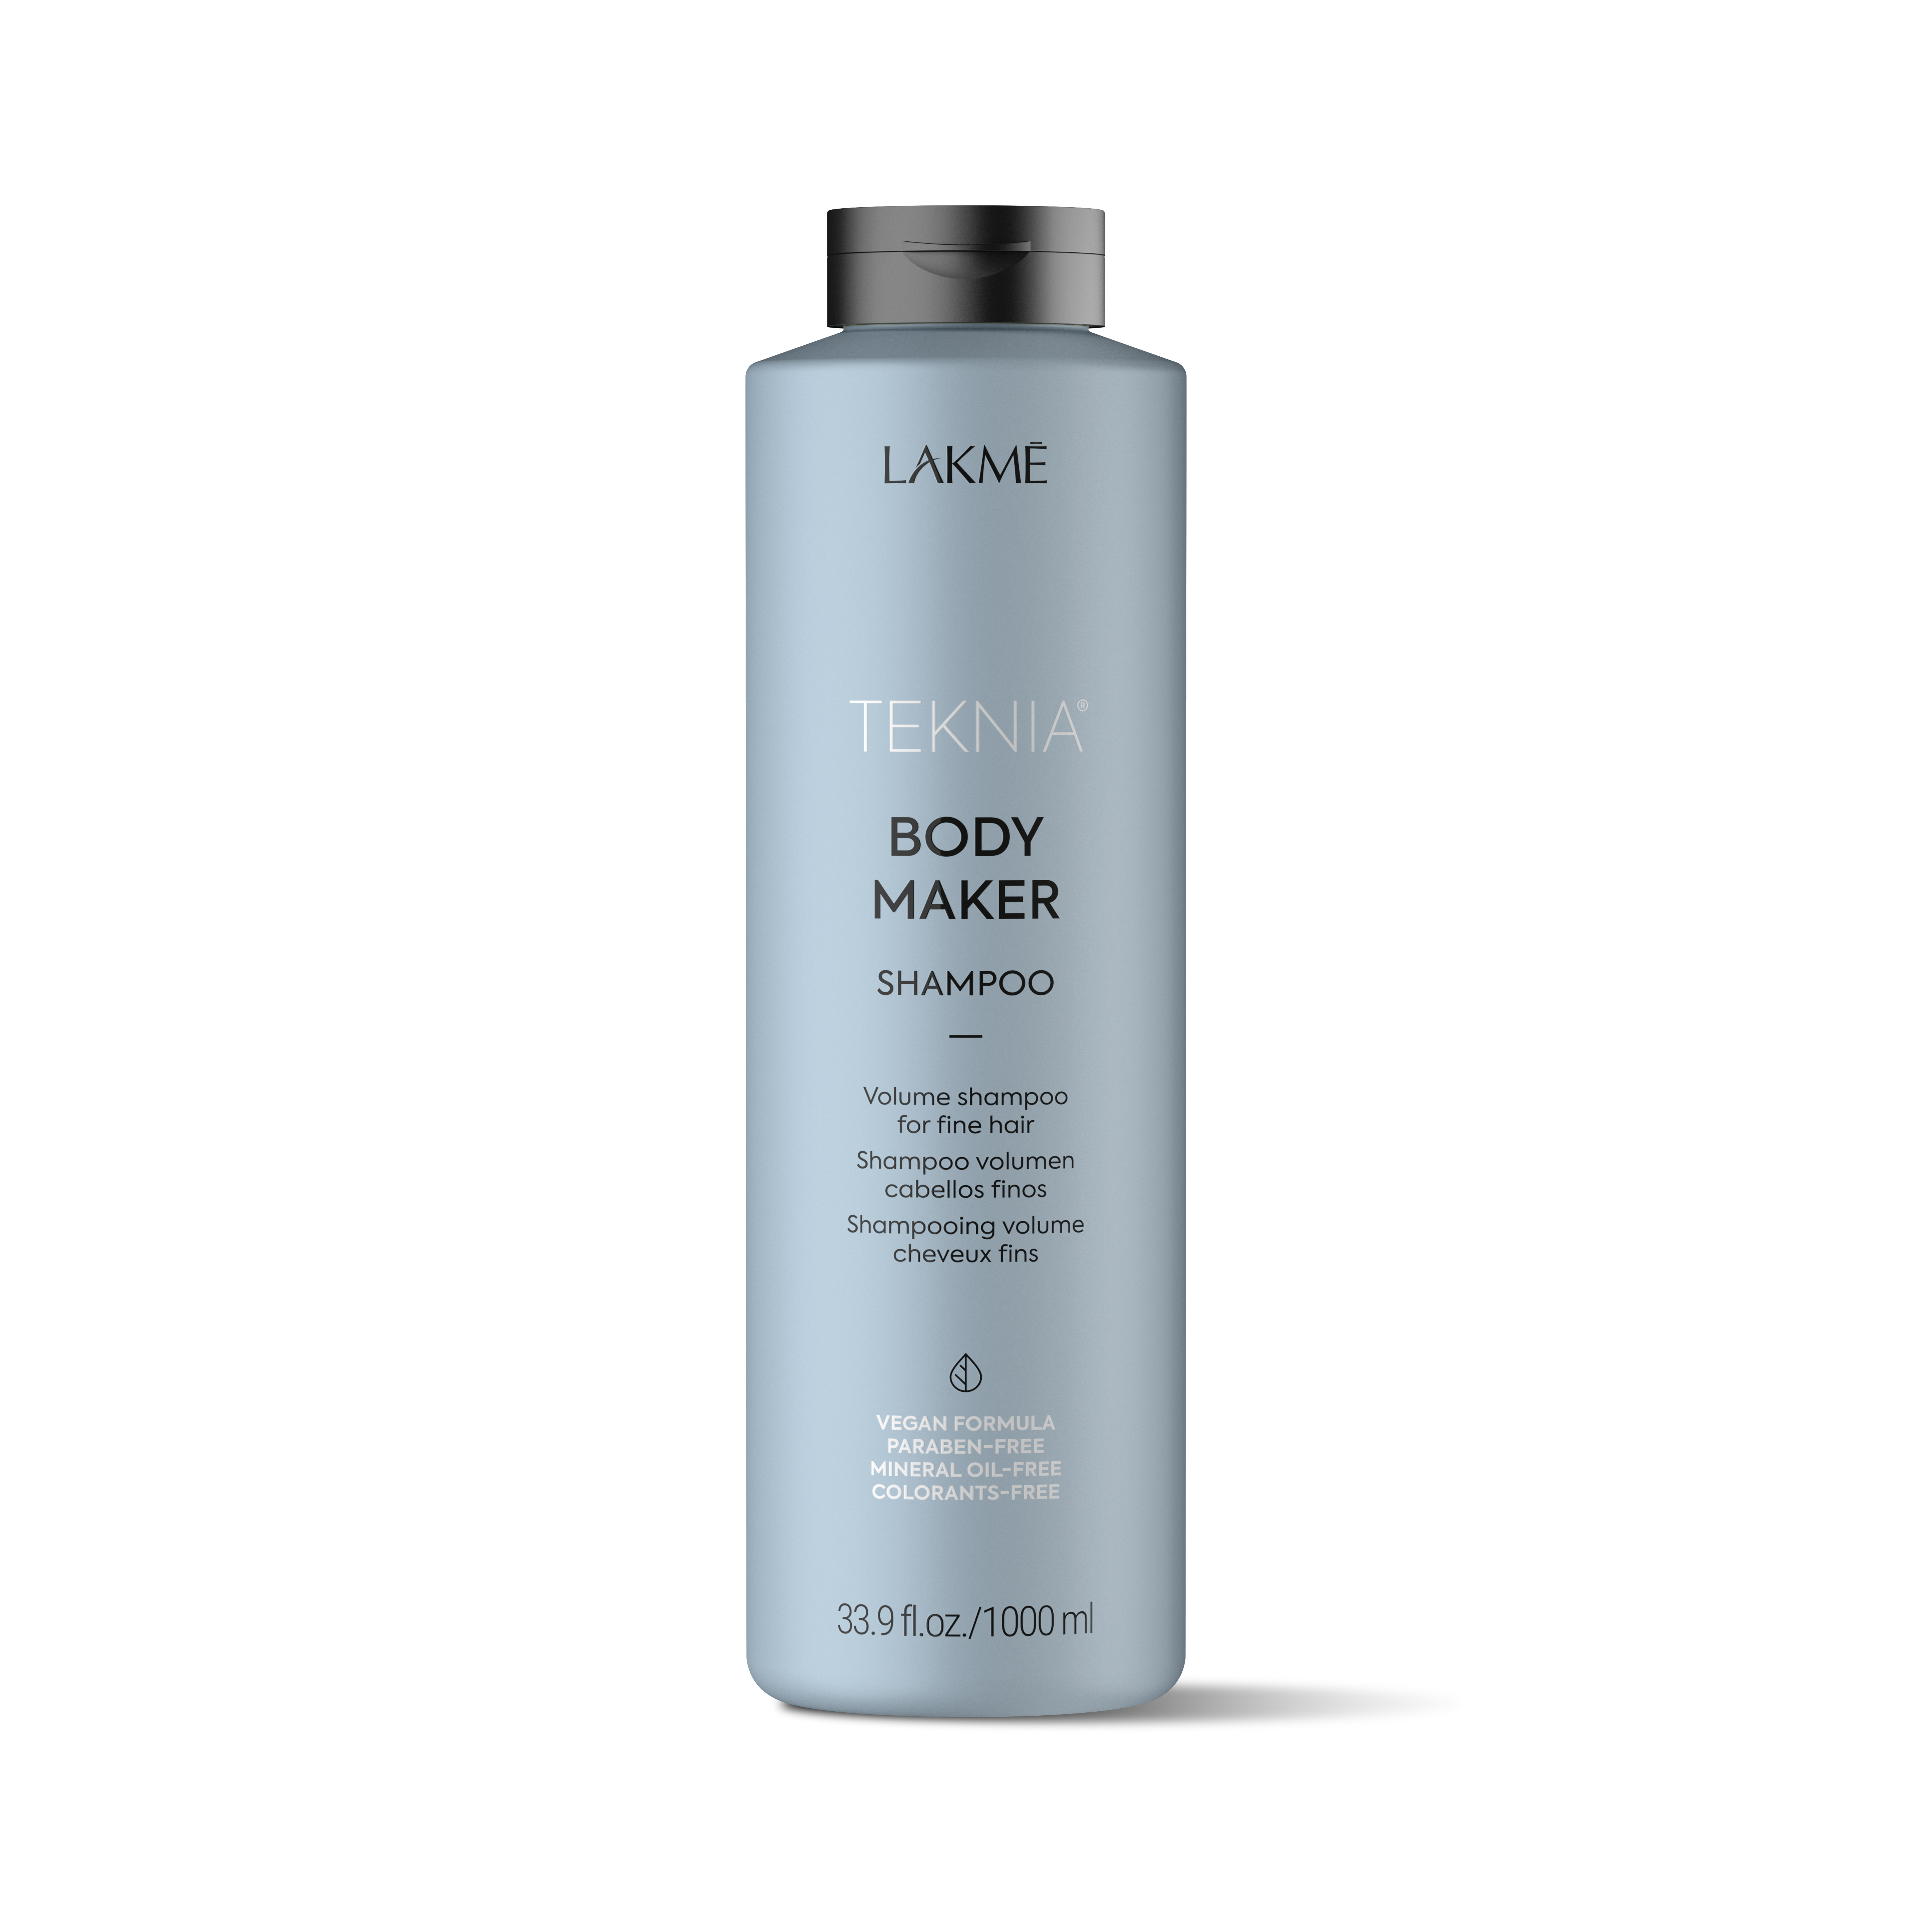 Lakmé - Teknia Body Maker Shampoo 1000 ml - Skjønnhet